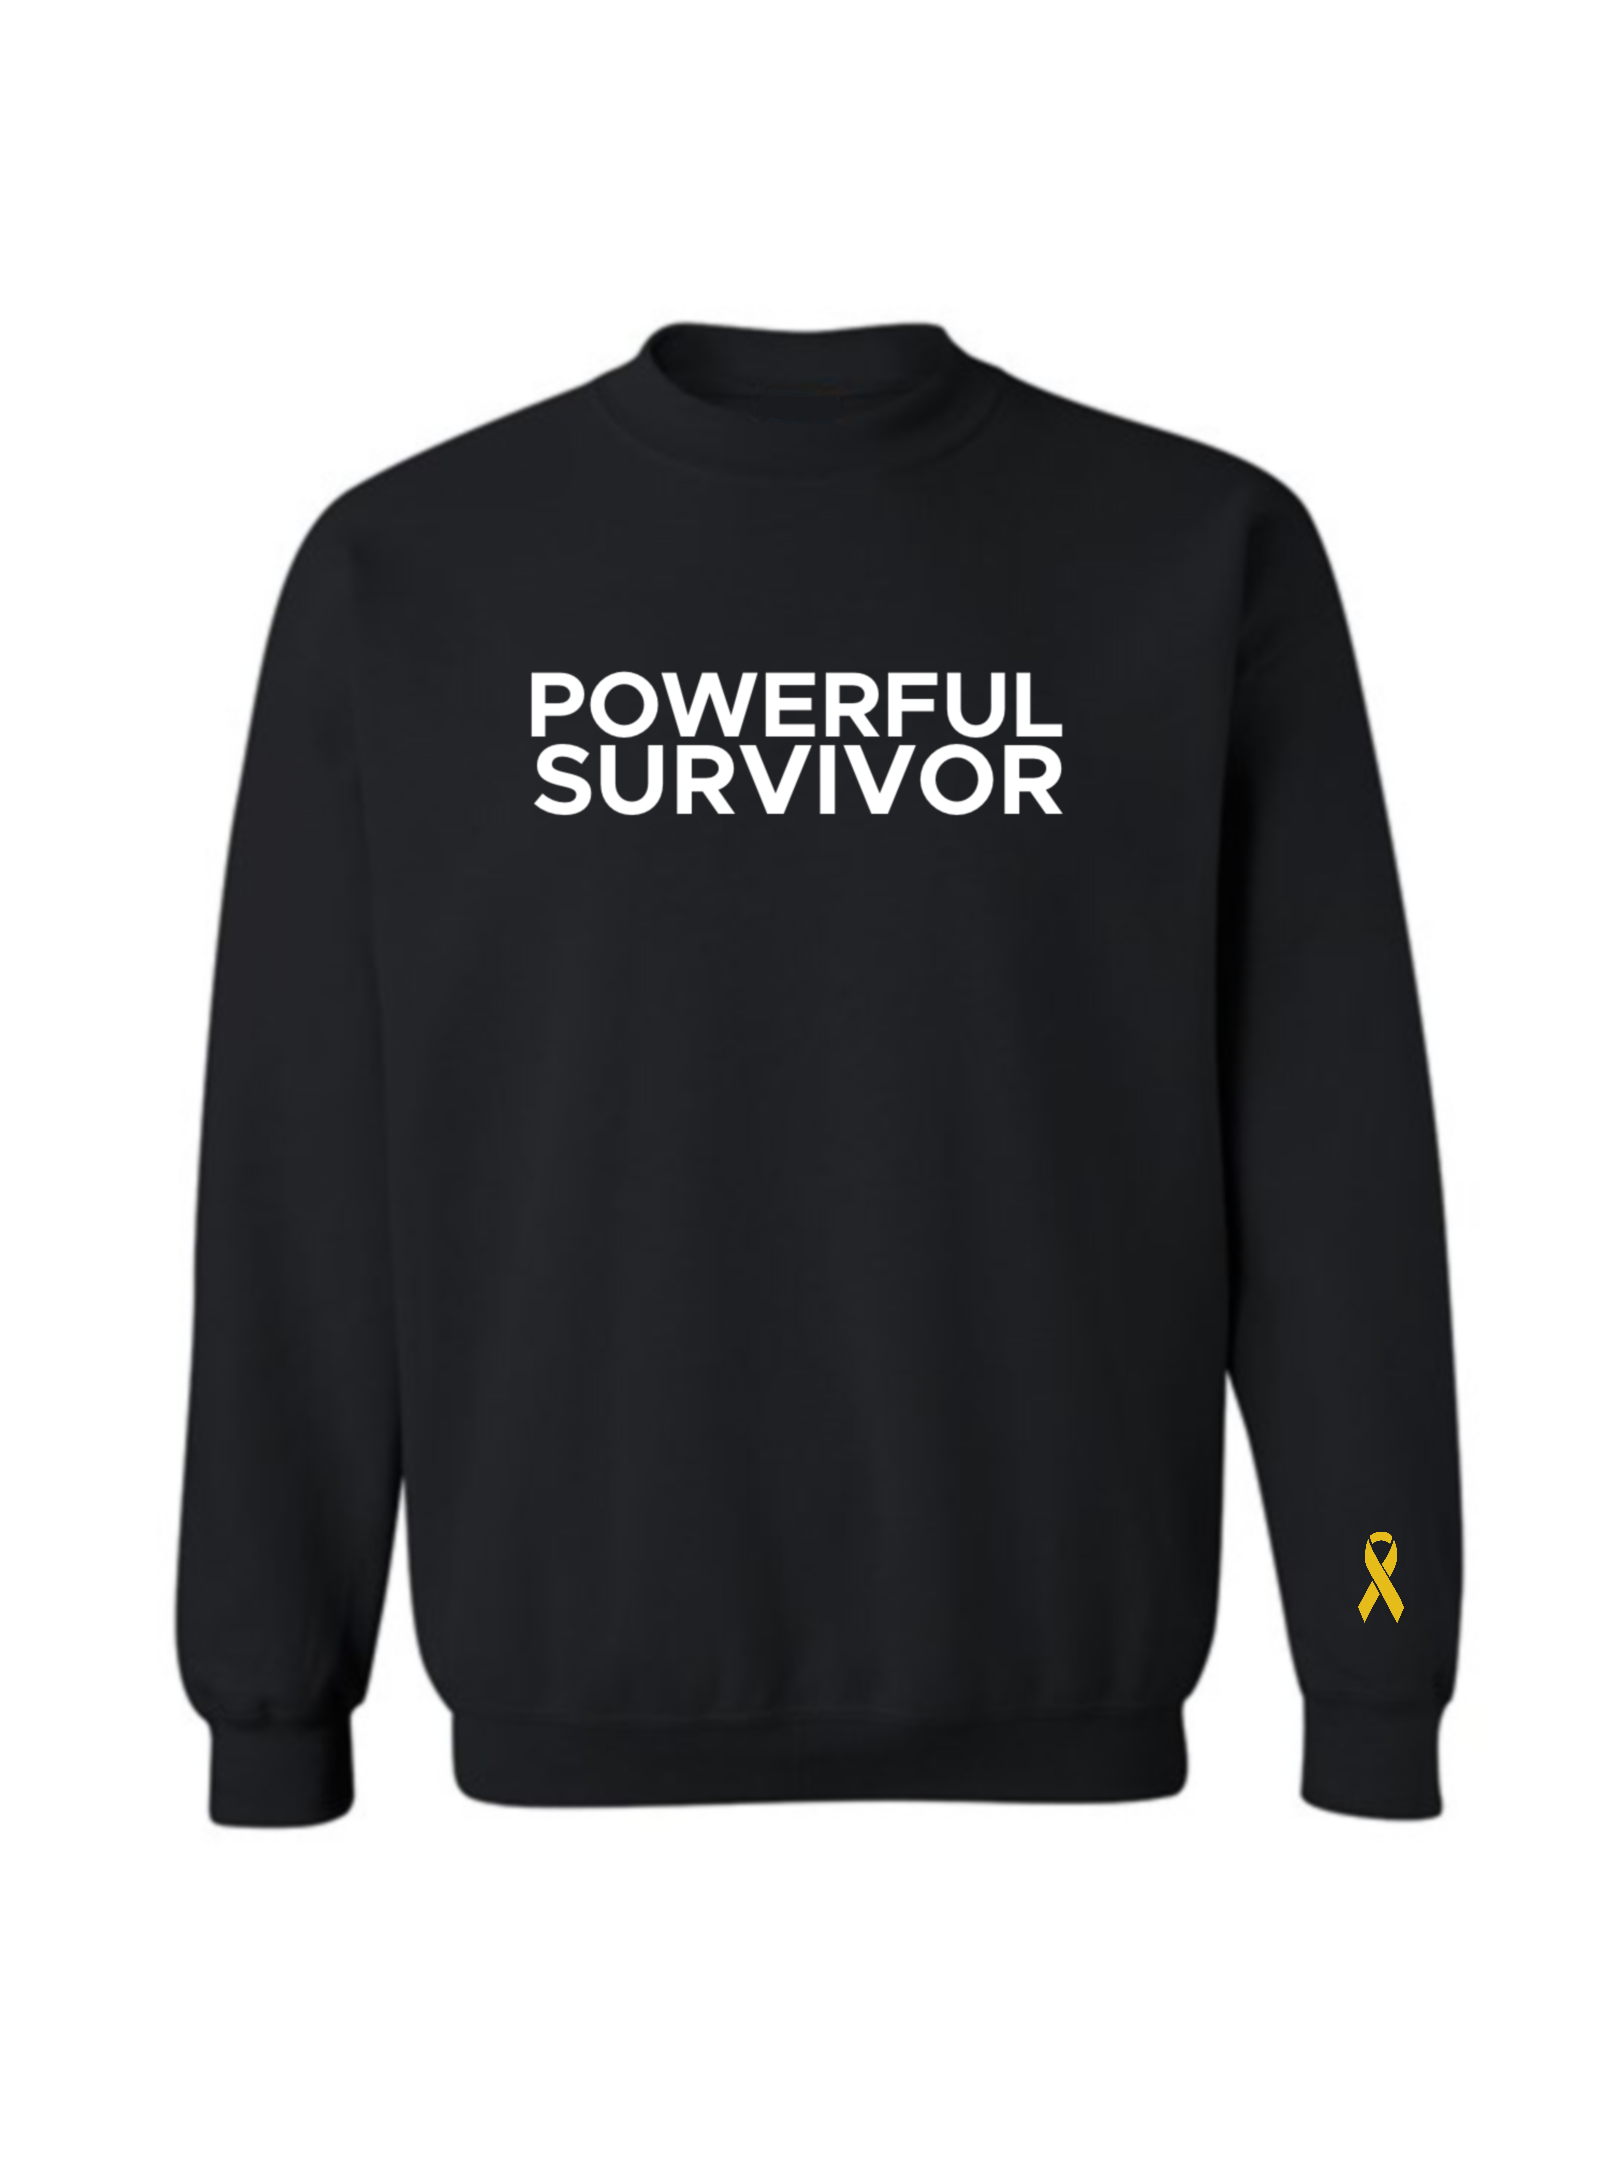 Powerful Survivor Sweatshirt